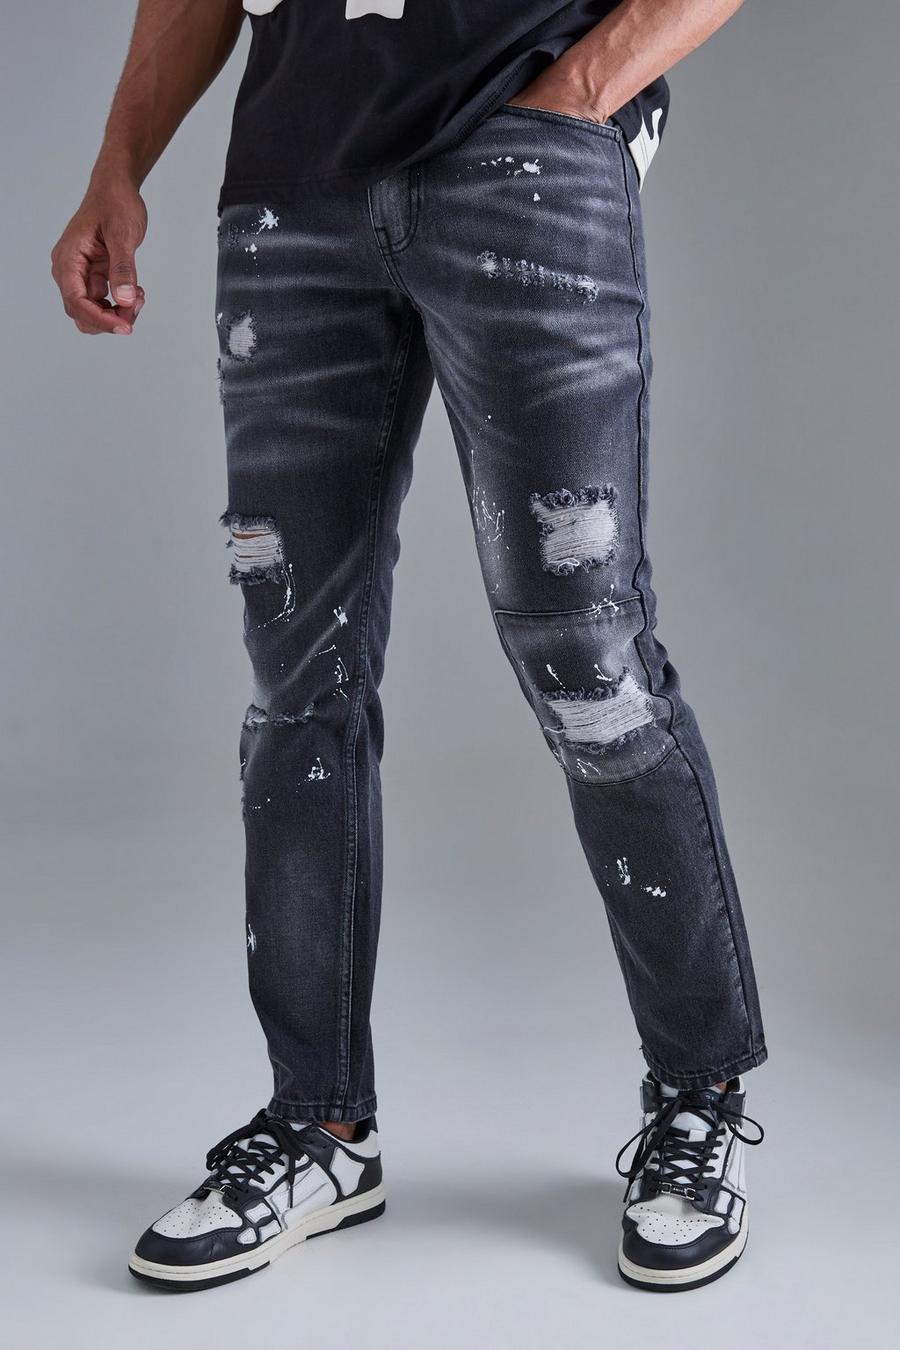 Jeans Slim Fit in denim rigido con strappi sul ginocchio e dettagli dipinti all over, Washed black